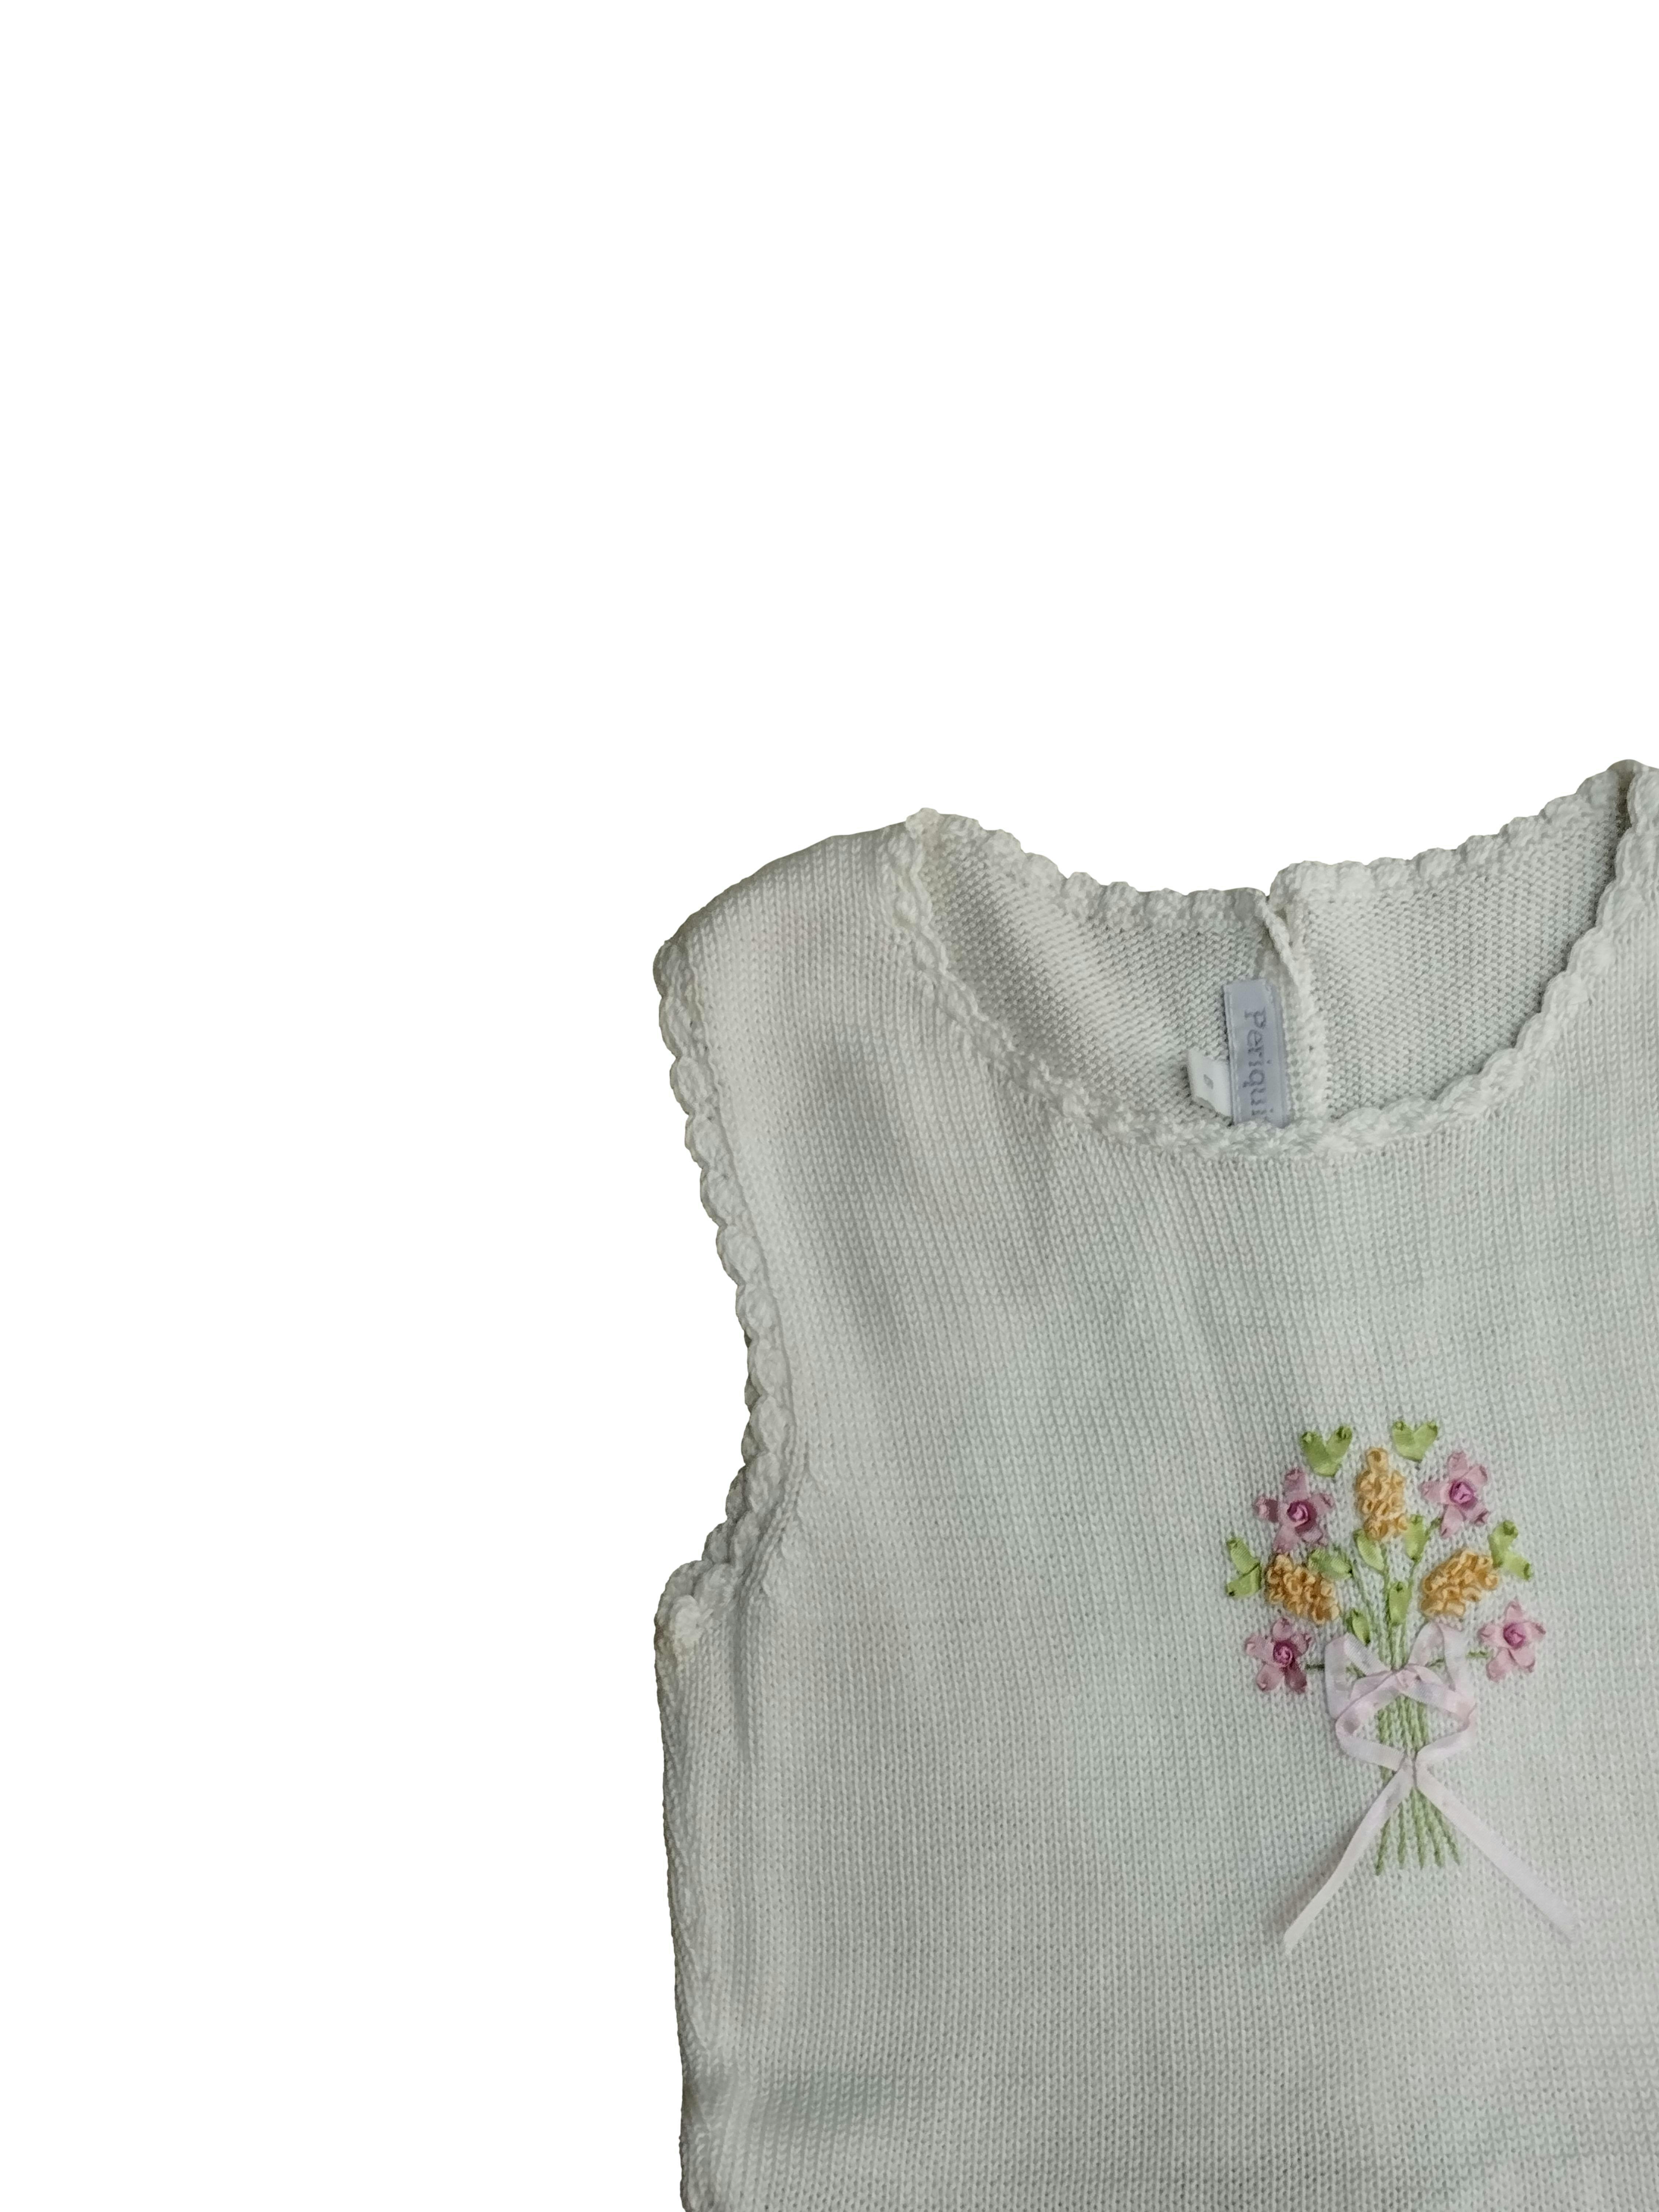 Vestido periquita, parte superior tejido en color blanco, bordado de flores y botones delanteros, parte inferior color palo rosa con forro. Pecho: 56 cm, Largo: 67 cm. SM